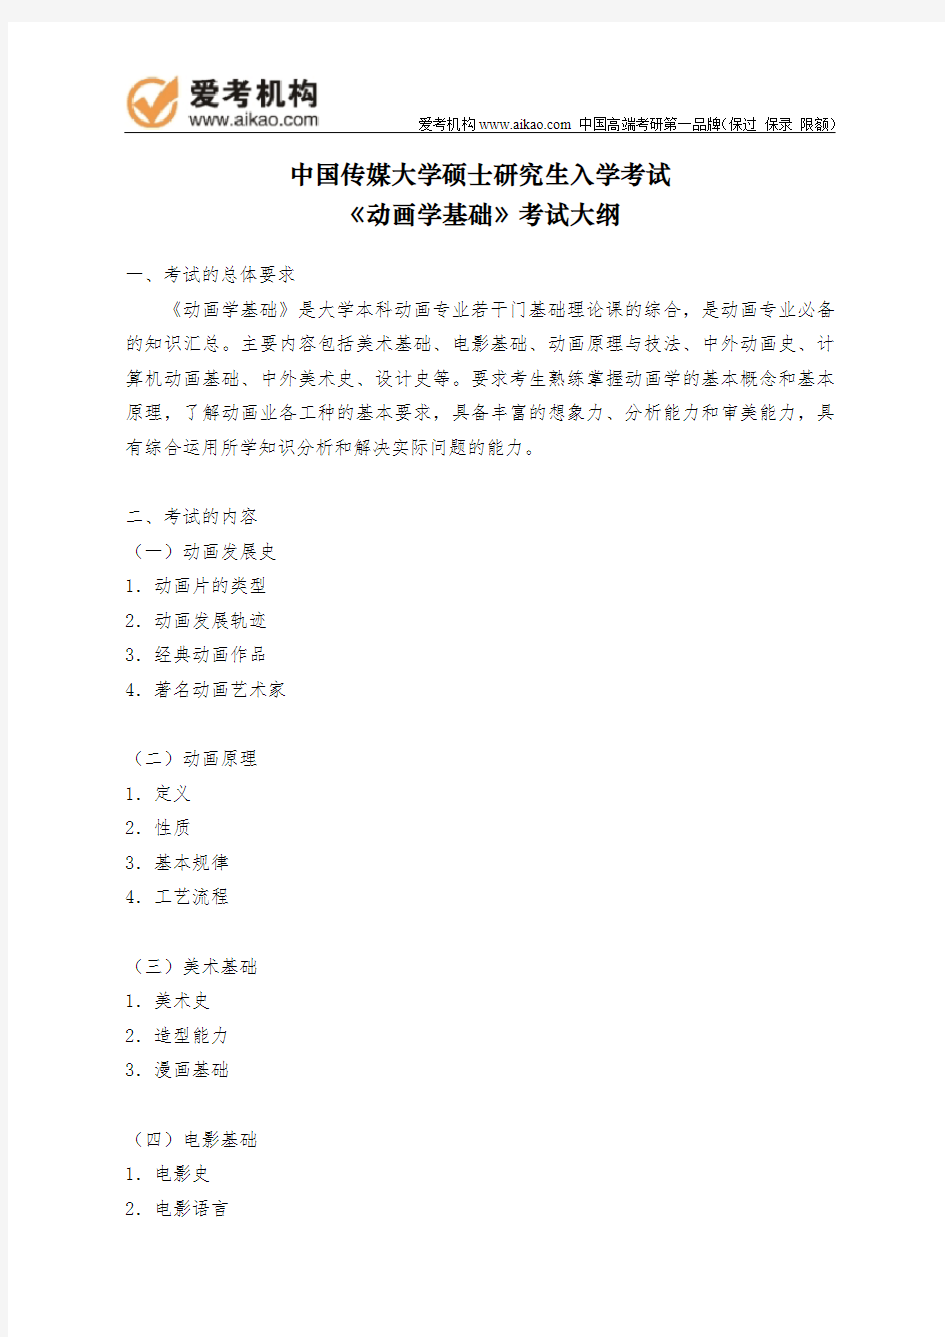 中国传媒大学考研722《动画学基础》考试大纲